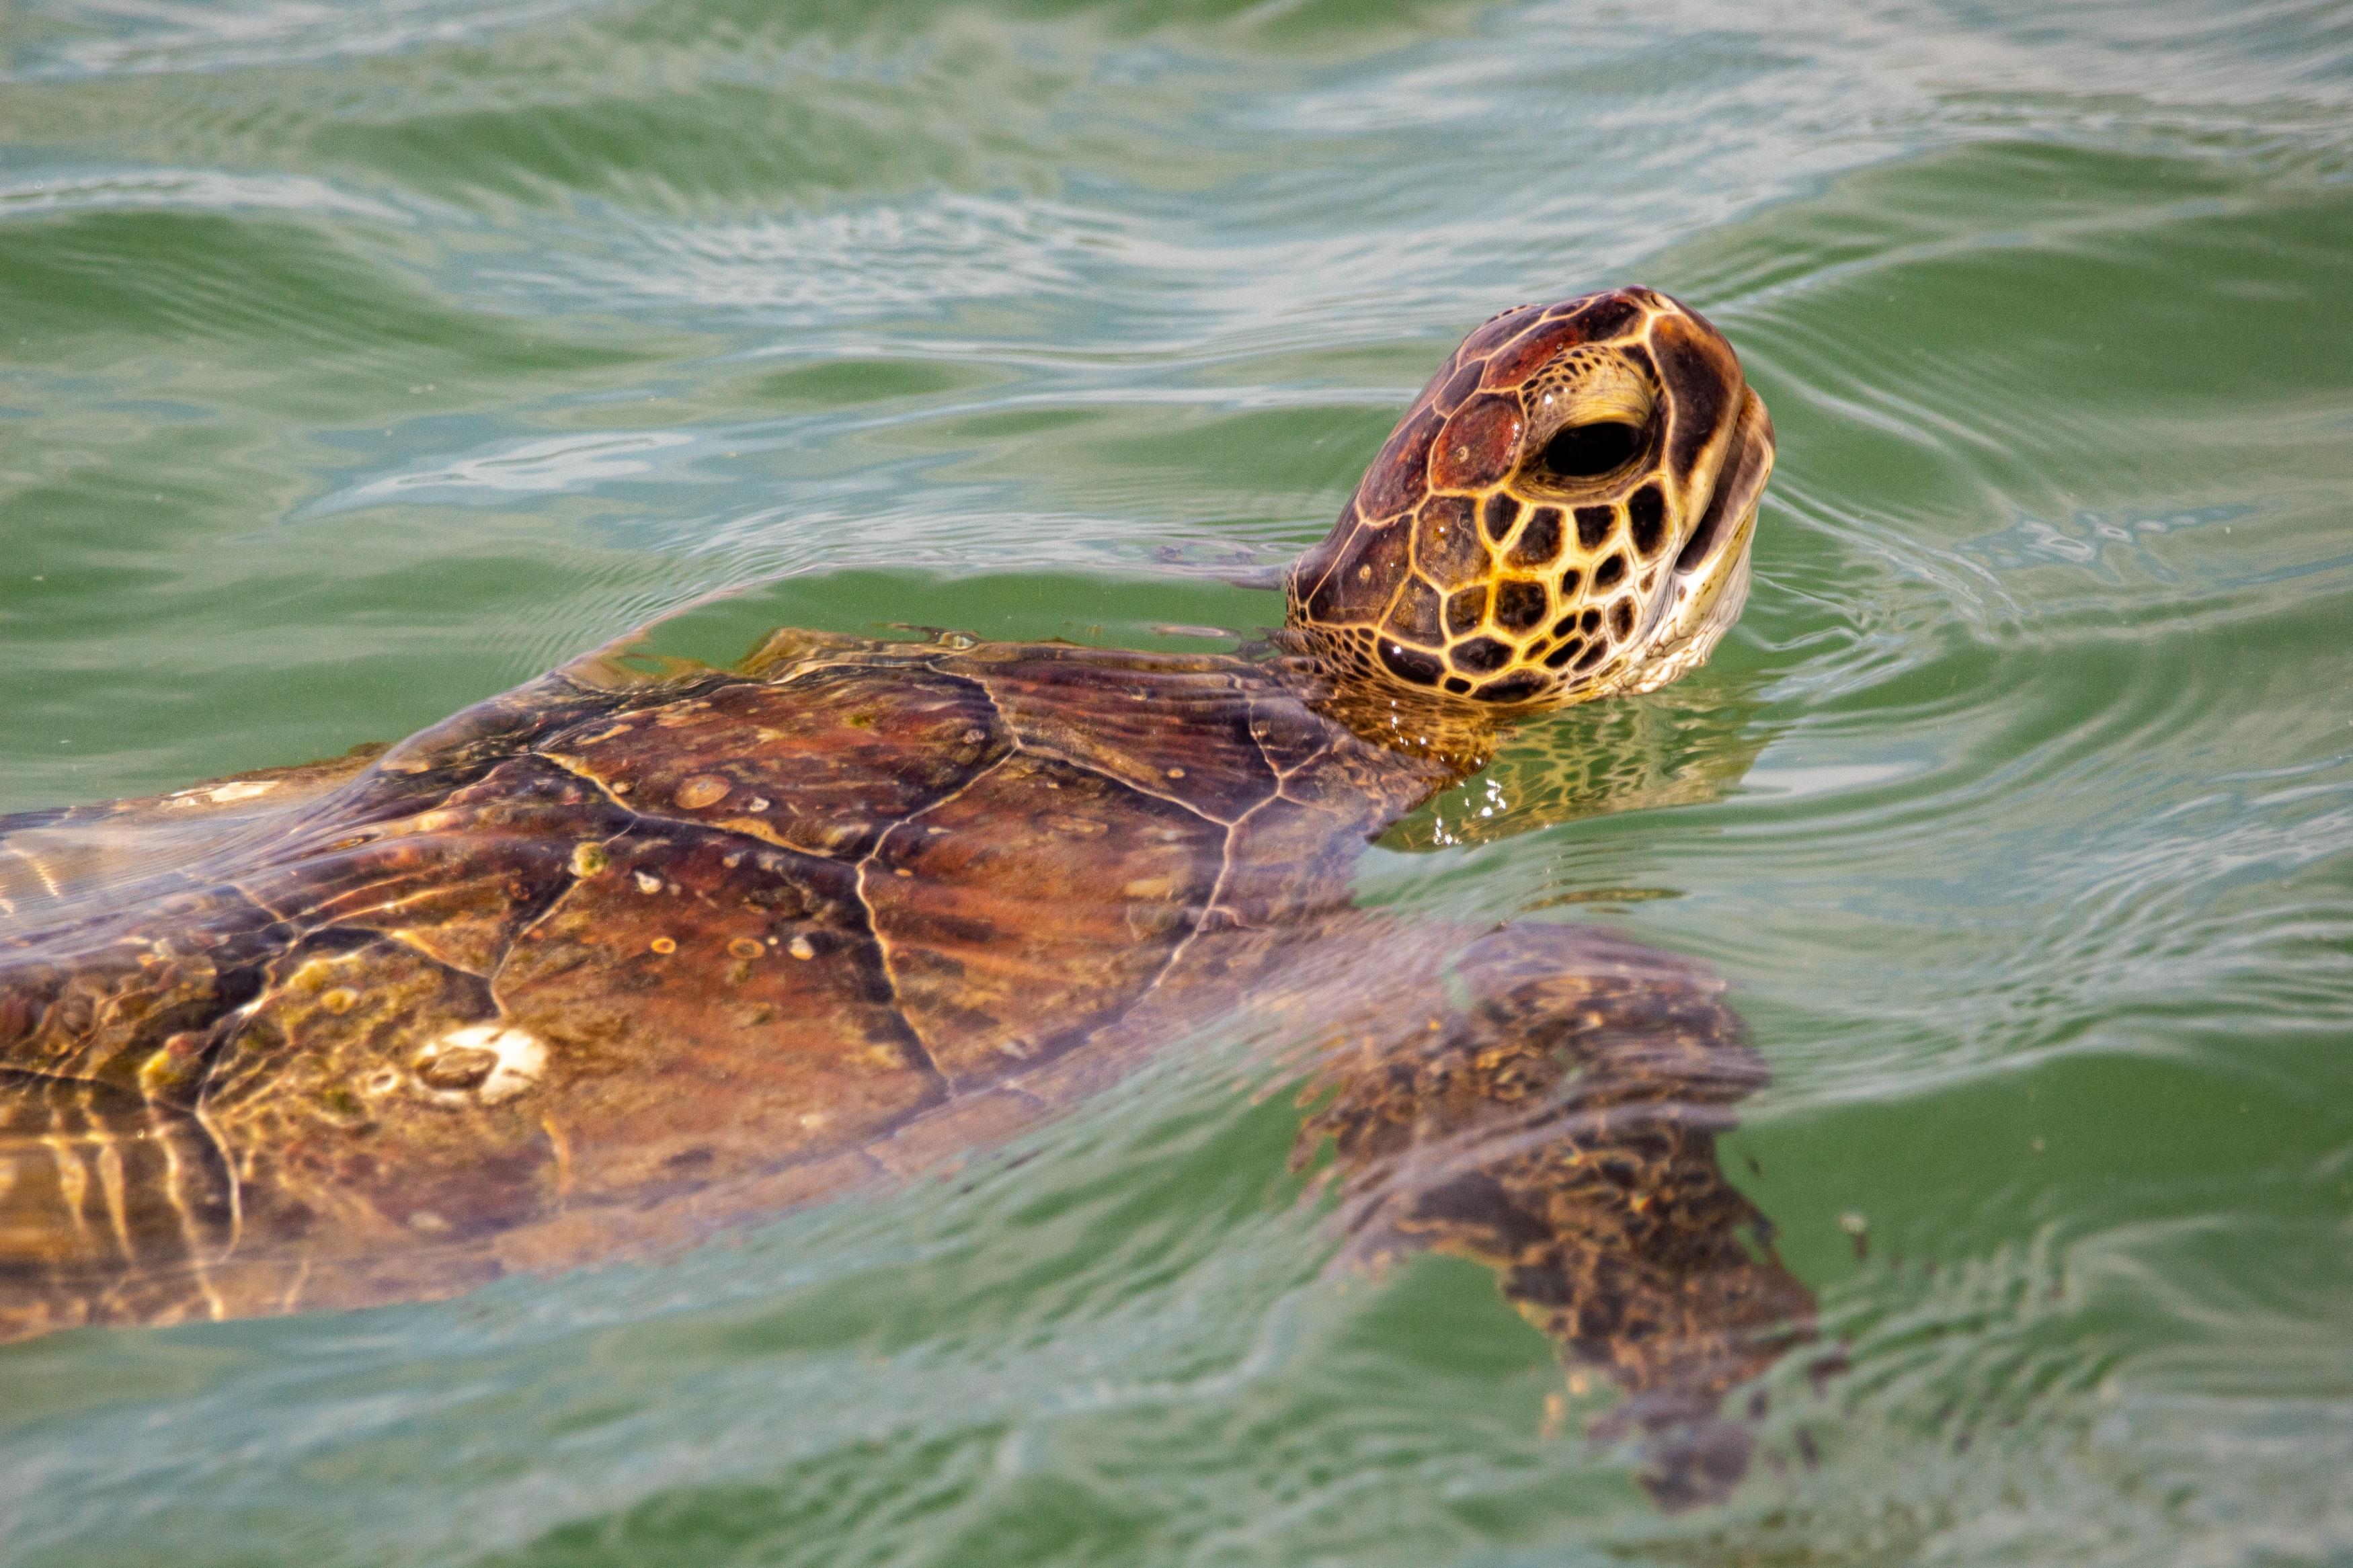 Sea Turtles in Corpus Christi, Texas